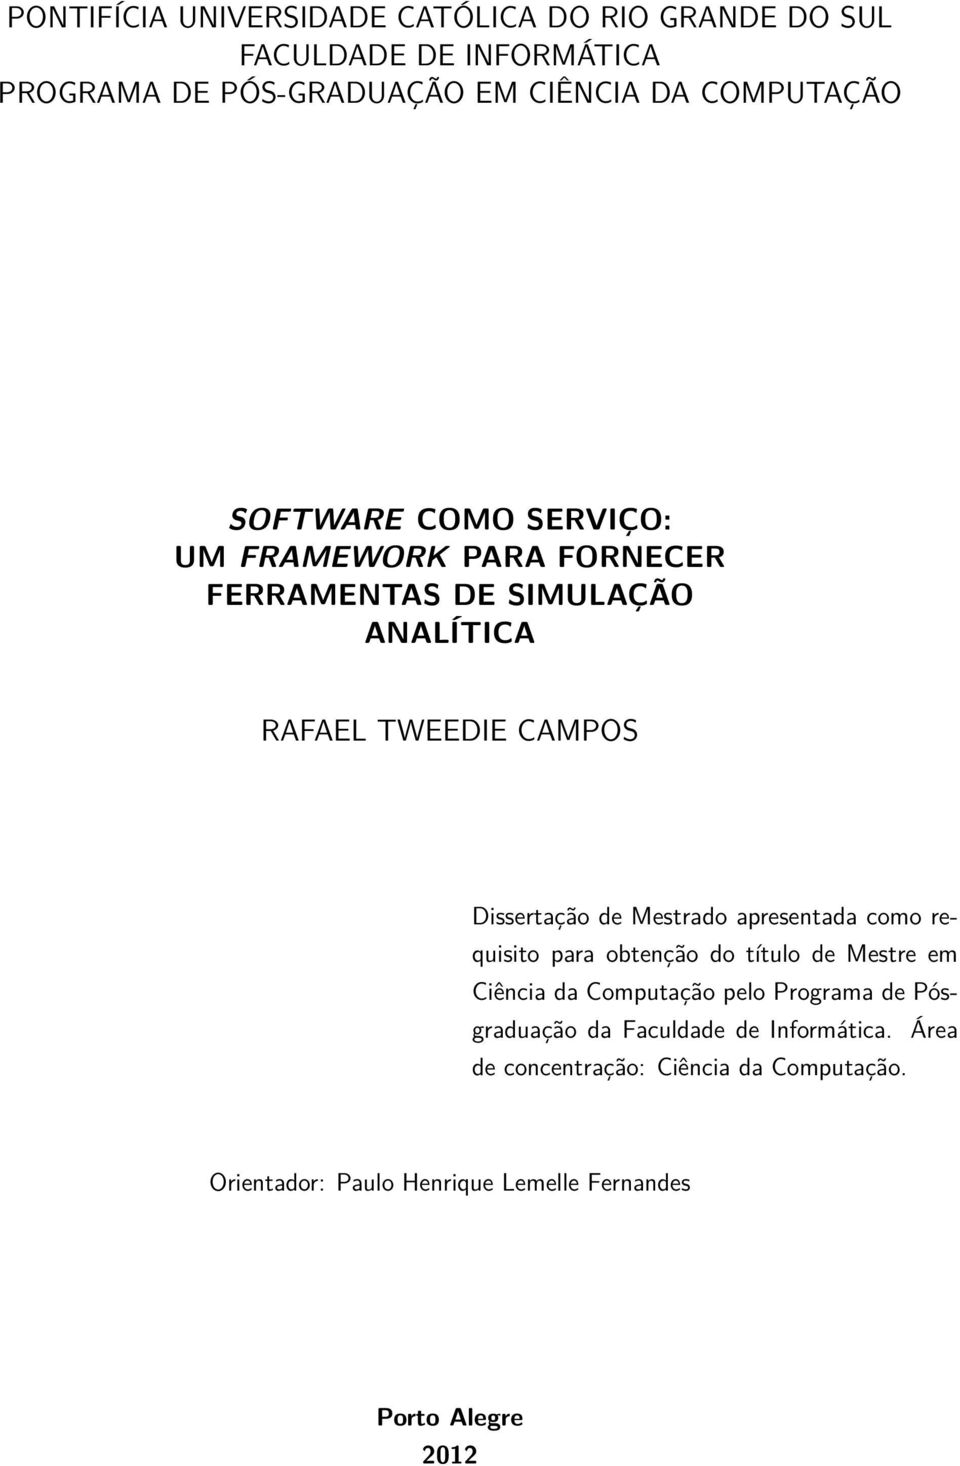 Dissertação de Mestrado apresentada como requisito para obtenção do título de Mestre em Ciência da Computação pelo Programa de